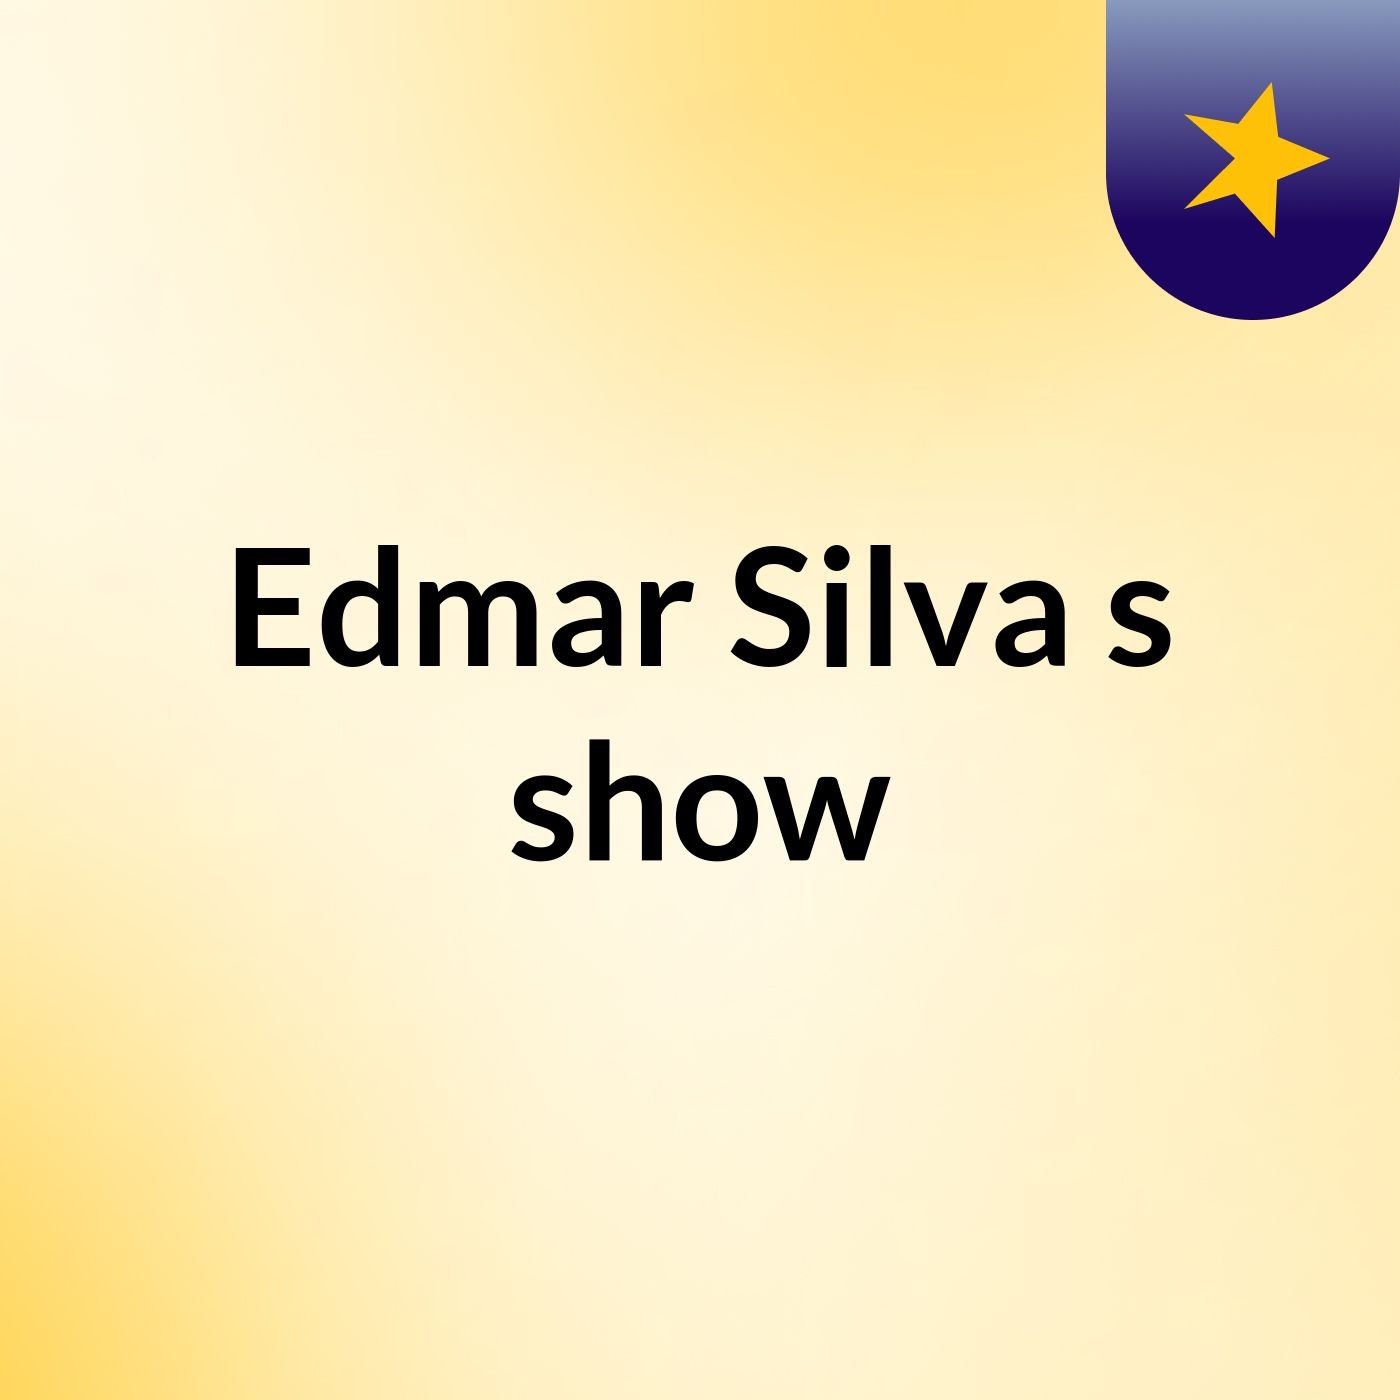 Edmar Silva's show